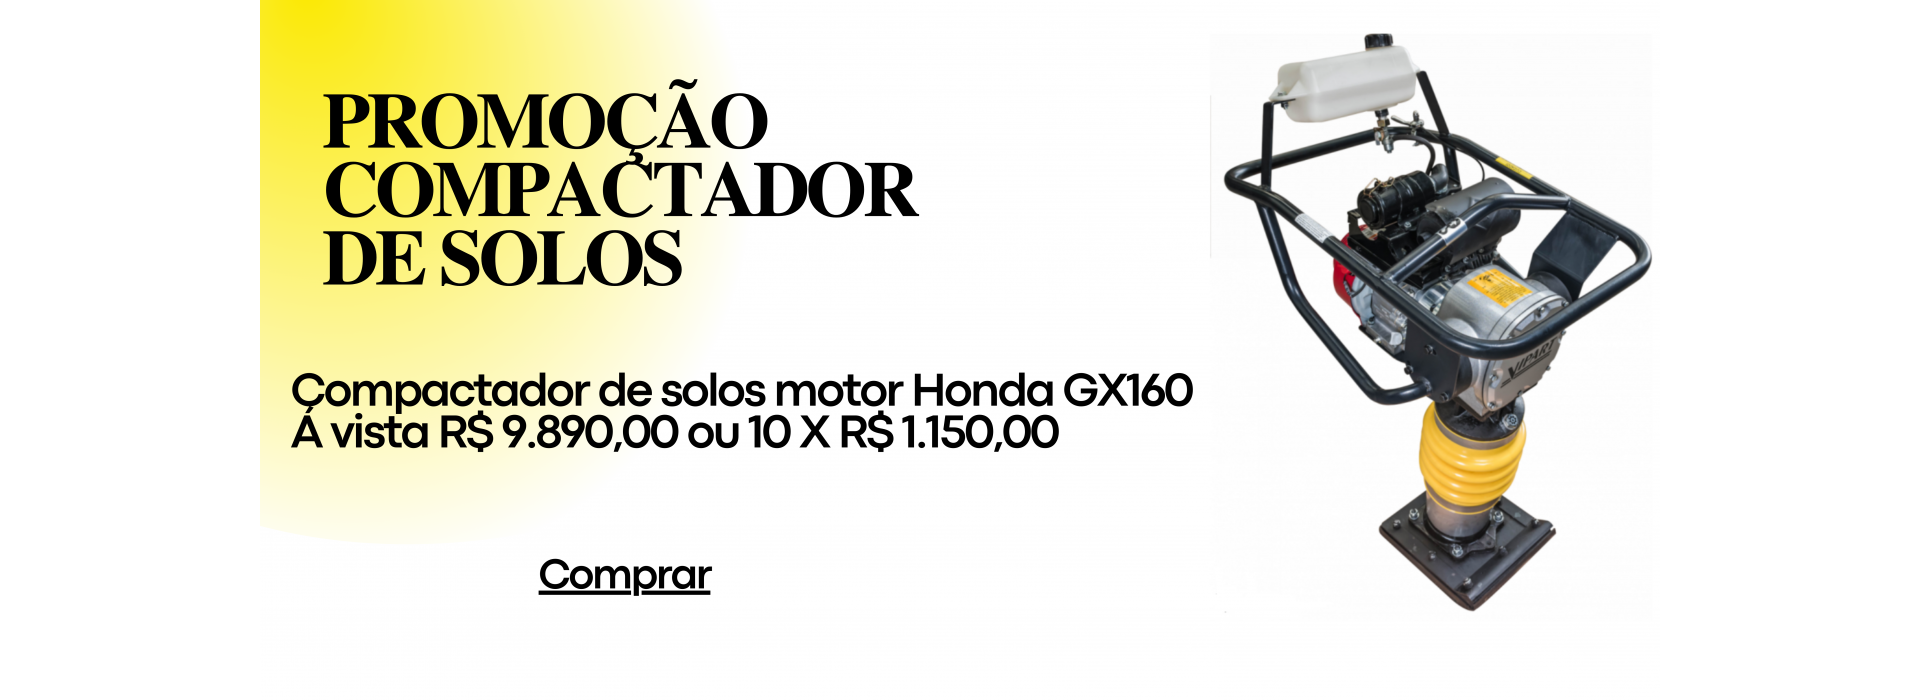 Compactador de solos Honda GX160